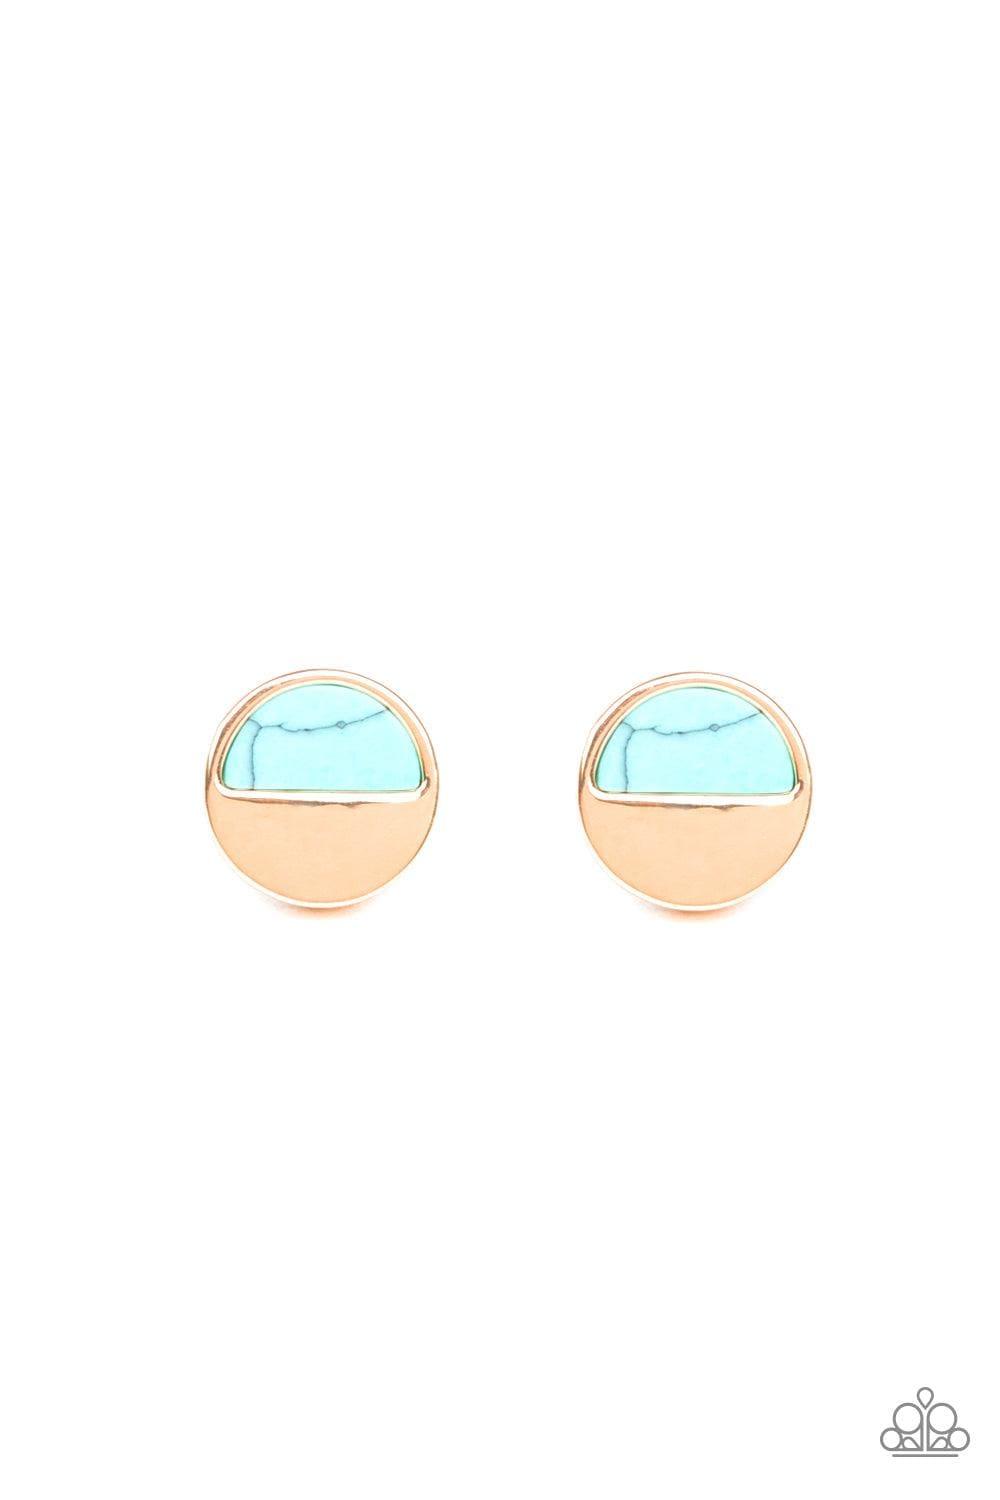 Paparazzi Accessories - Marble Minimalist - Blue Earrings - Bling by JessieK